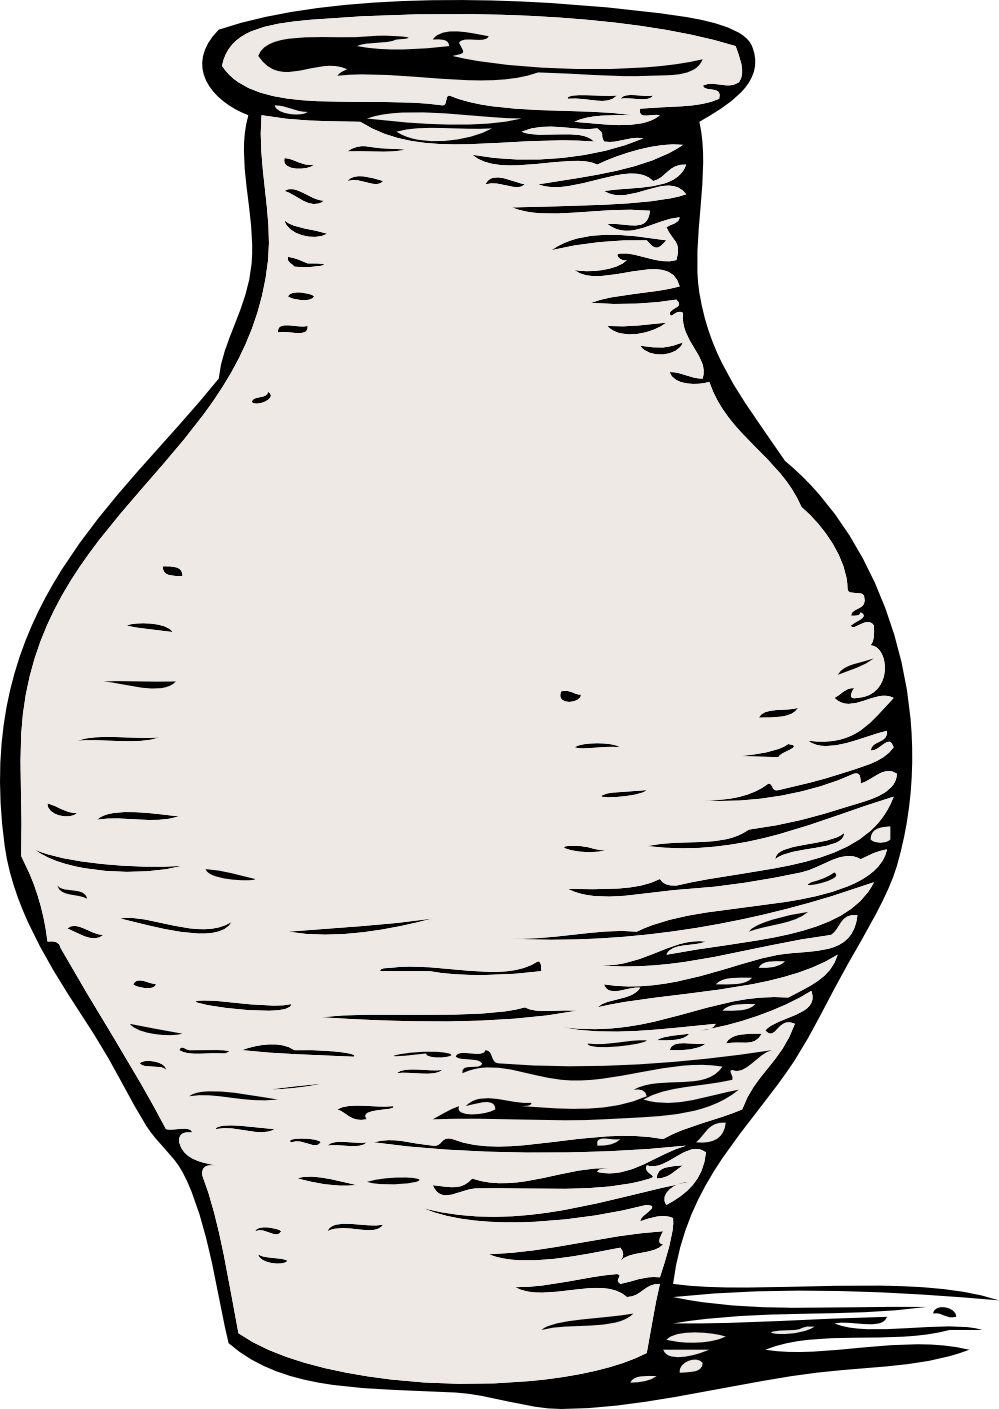 Outline clipart vase. Black and white panda